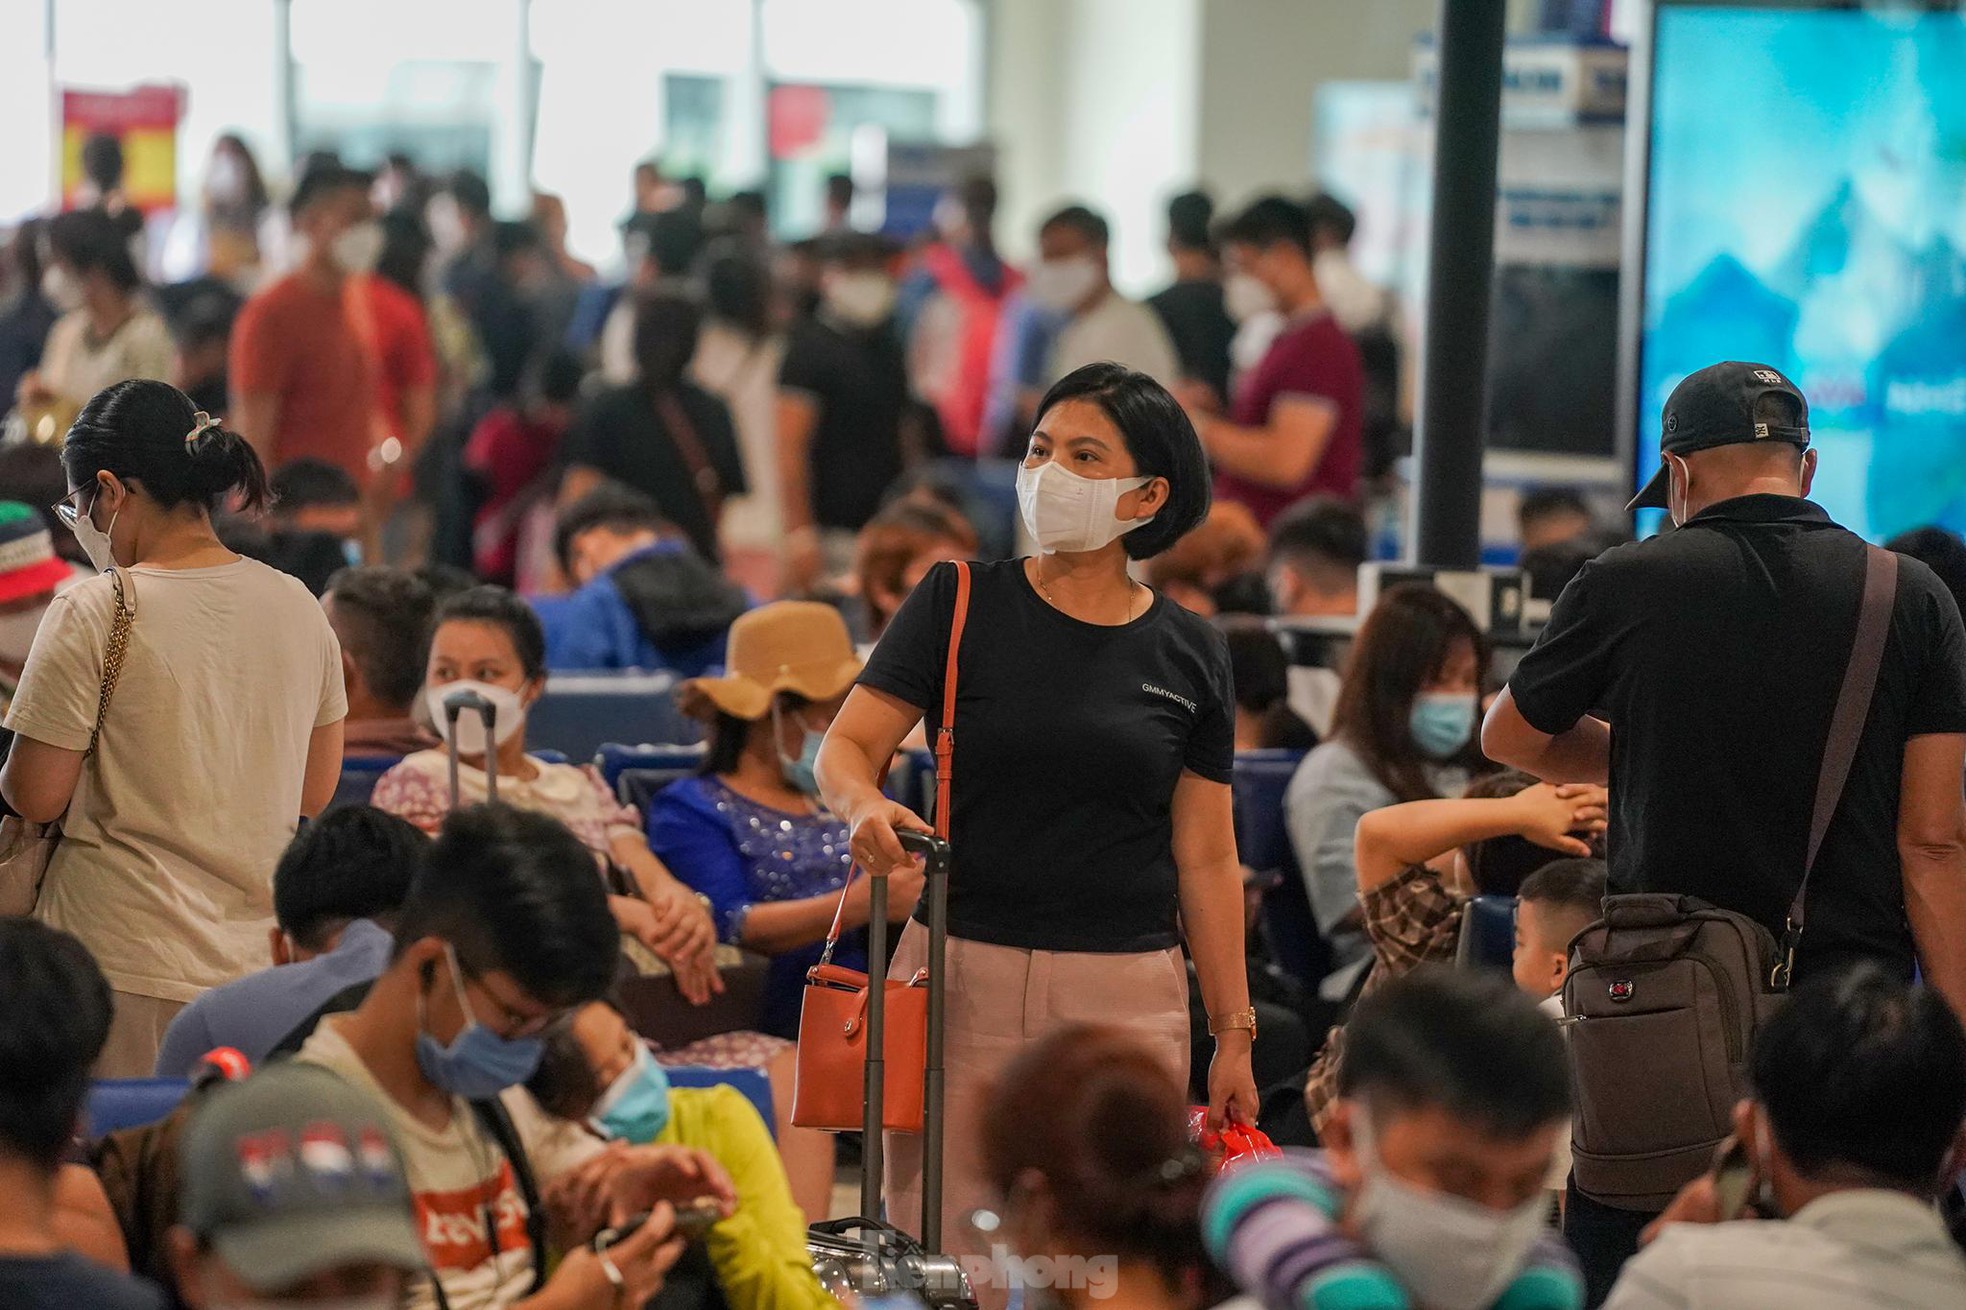 Hình ảnh đối lập ở sân bay Tân Sơn Nhất sáng 30/4 - Ảnh 16.